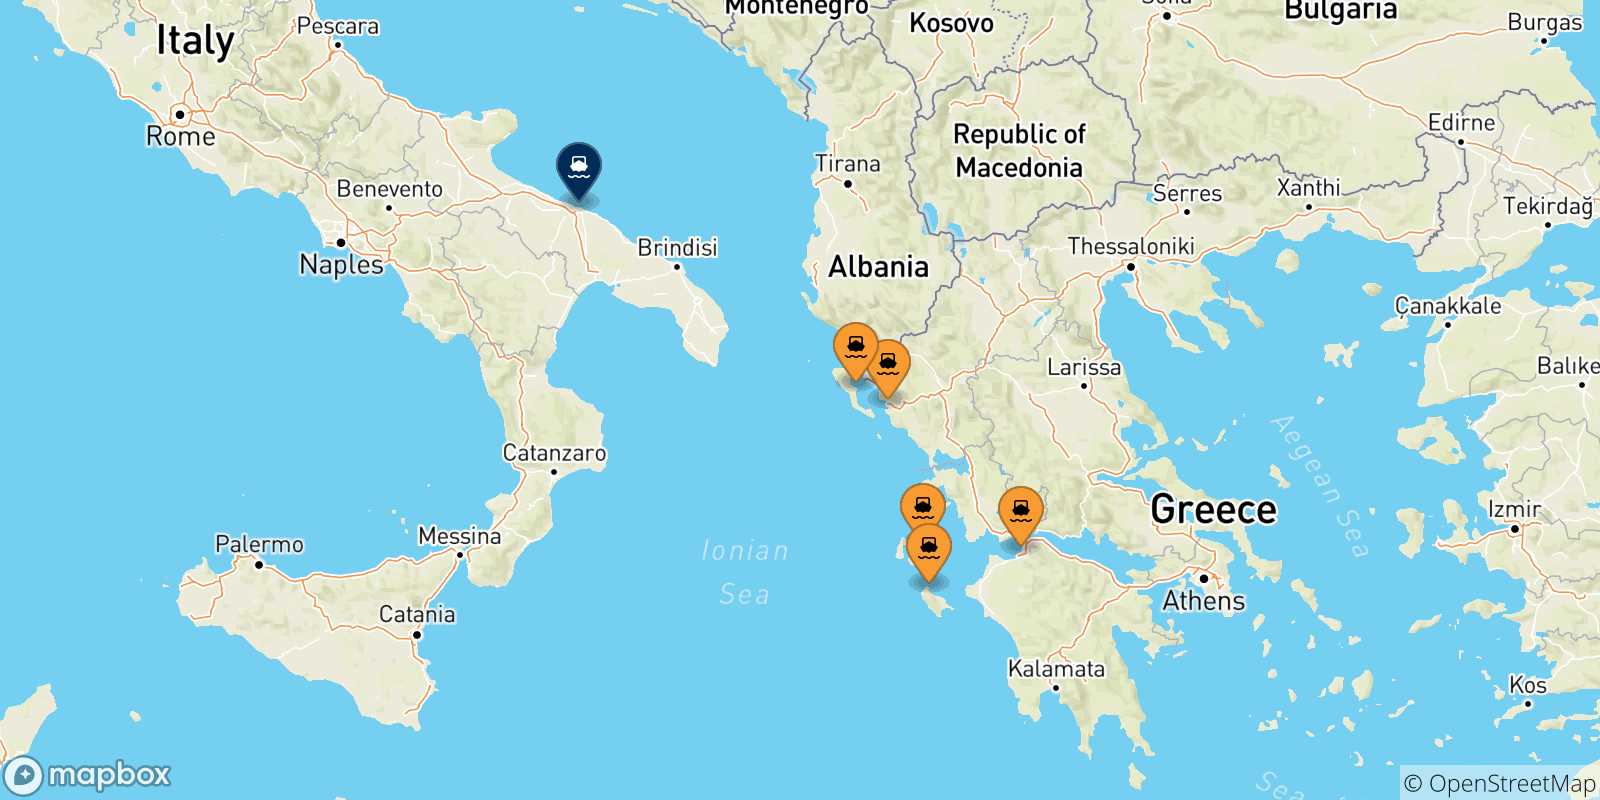 Mappa delle possibili rotte tra la Grecia e Bari